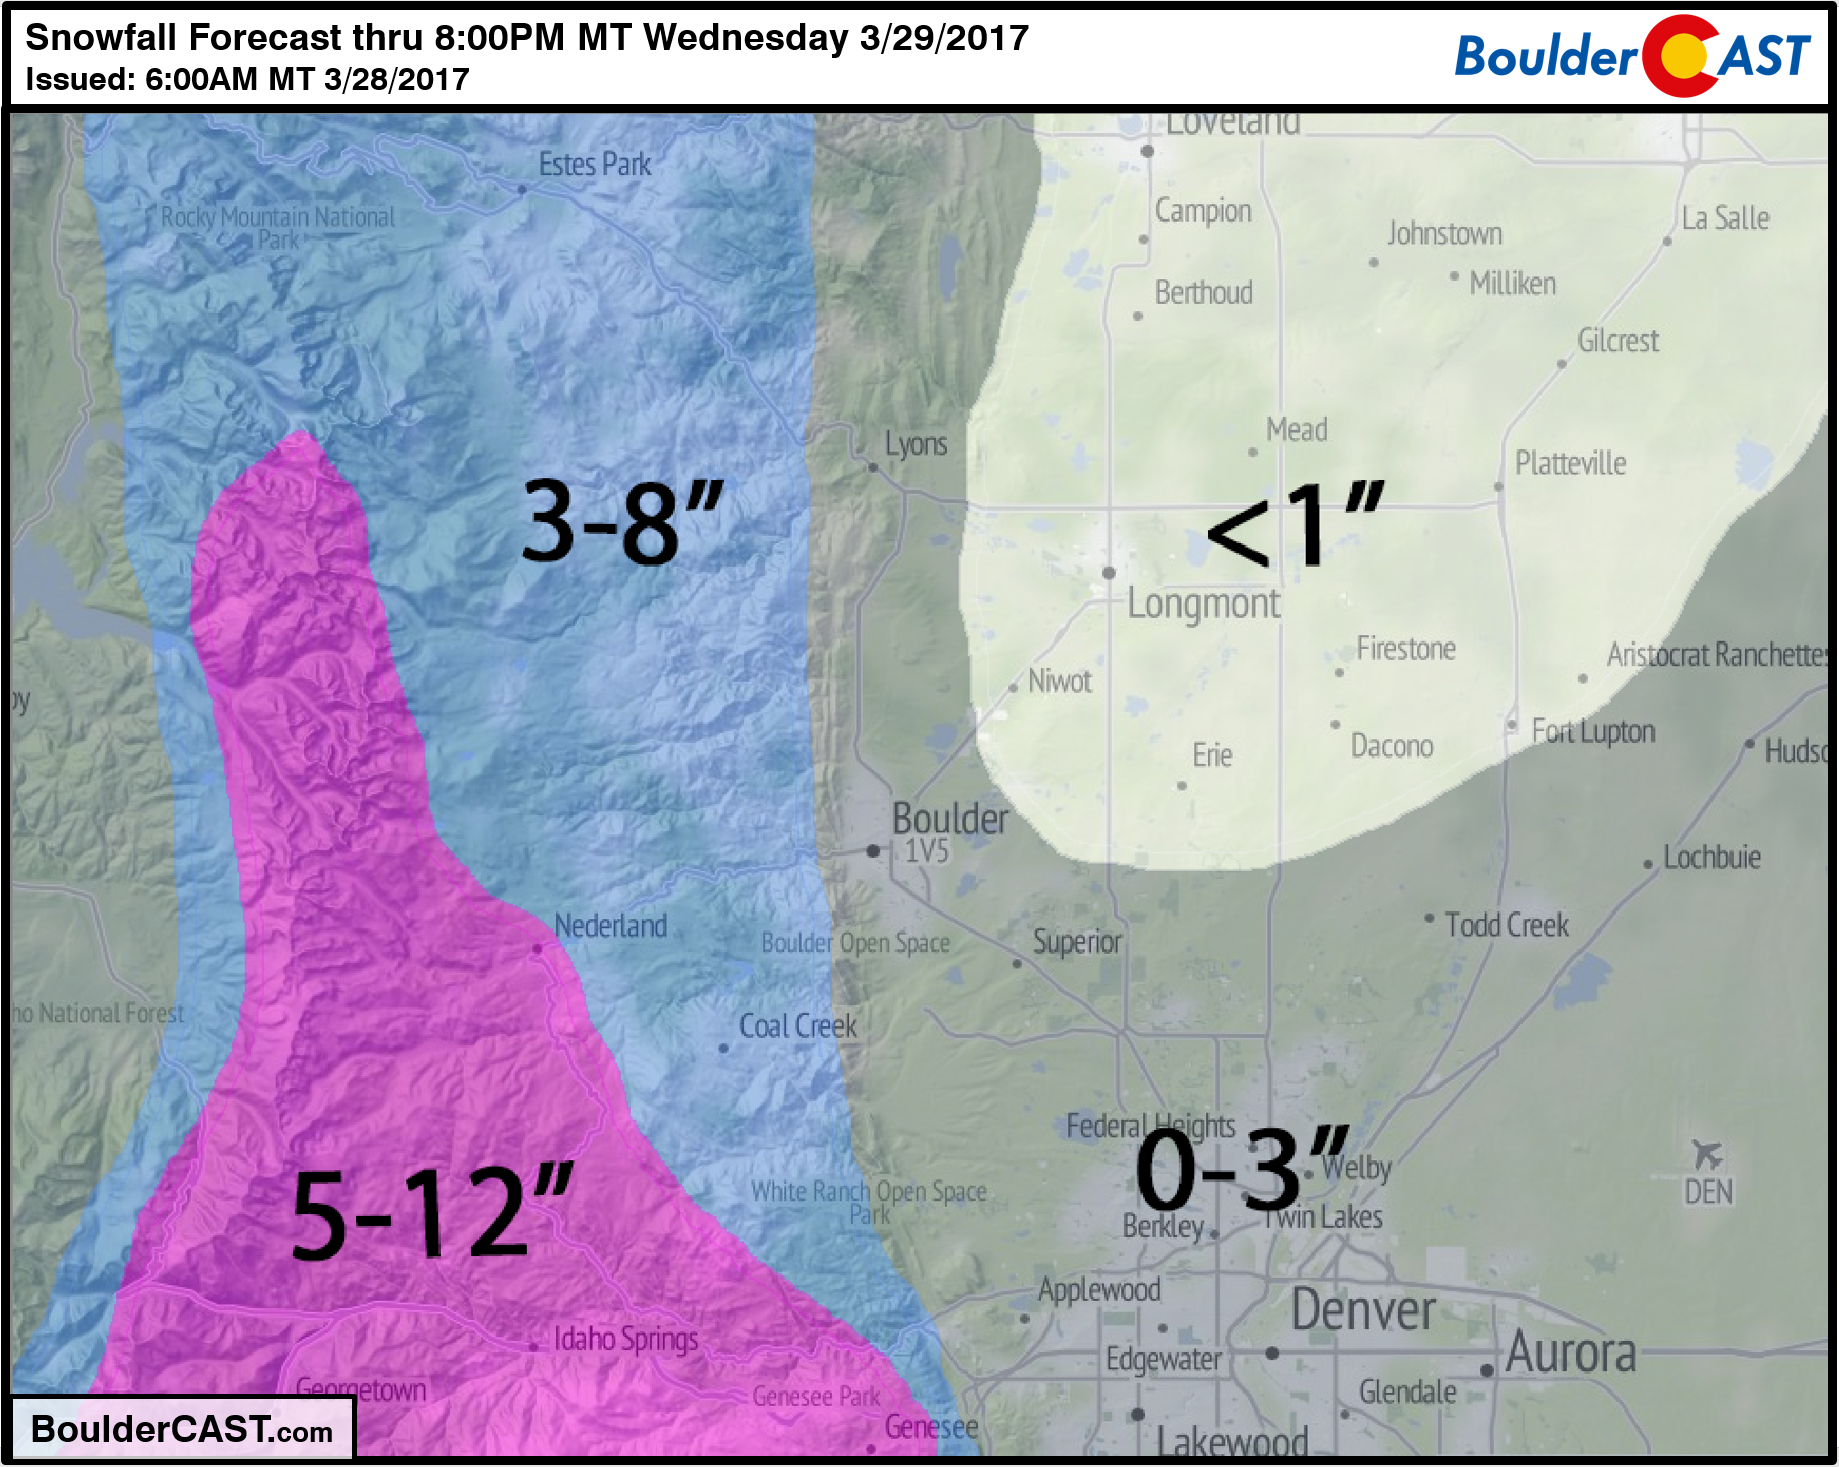 Snowfall_Forecast_March-28-29-2017_Denver_Colorado_BoulderCAST